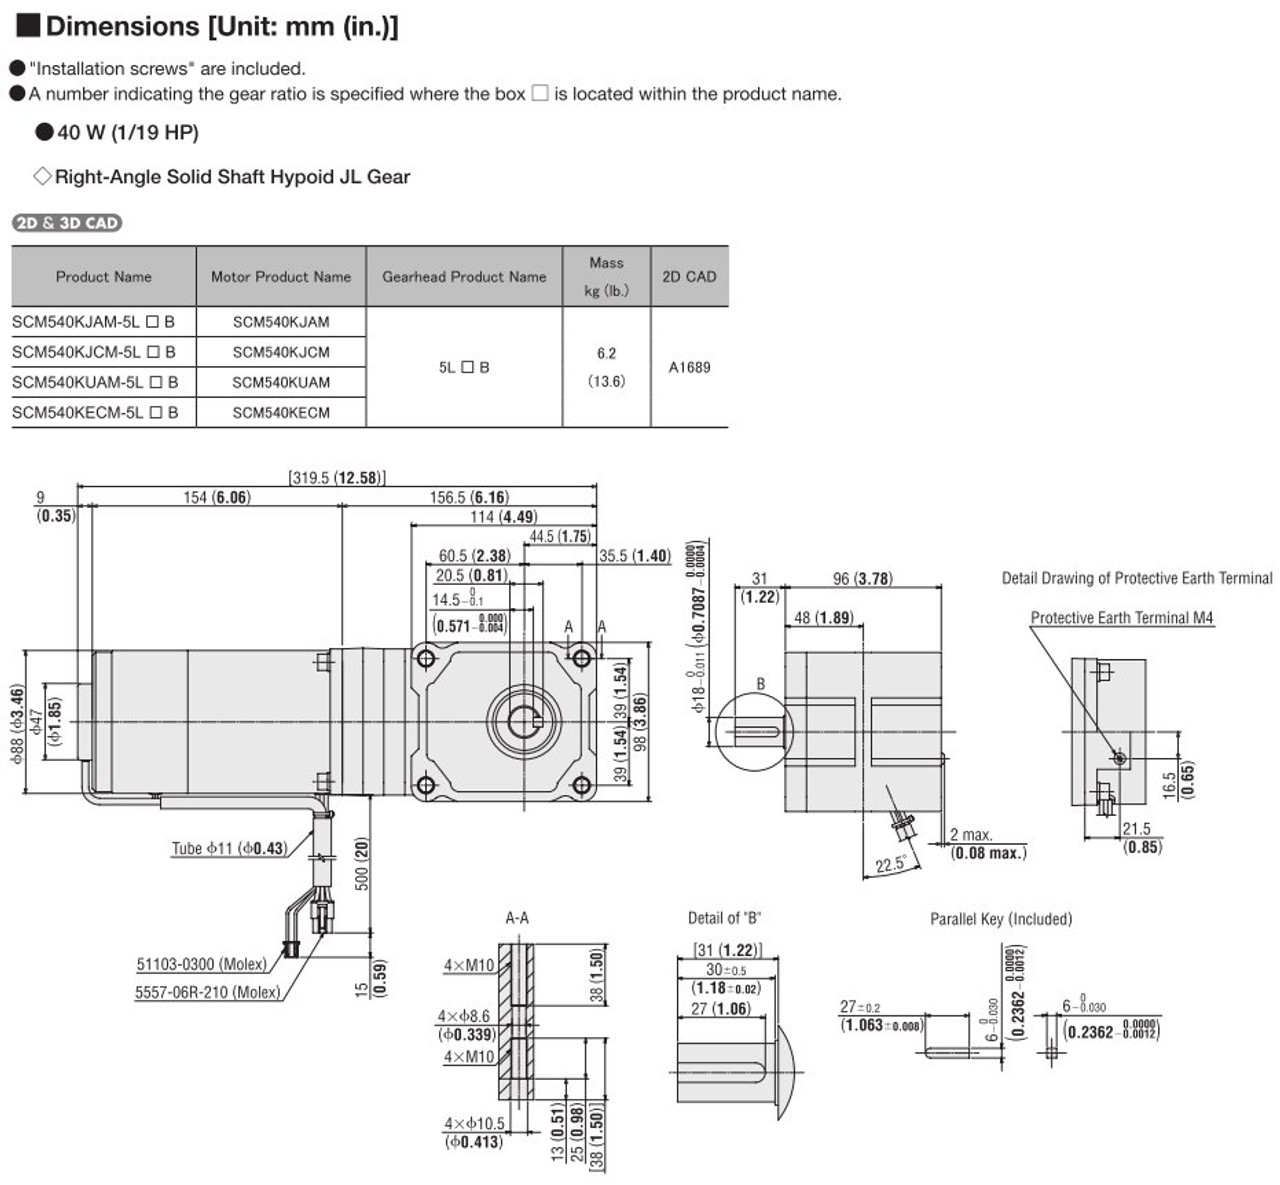 SCM540KECM-5L200B - Dimensions